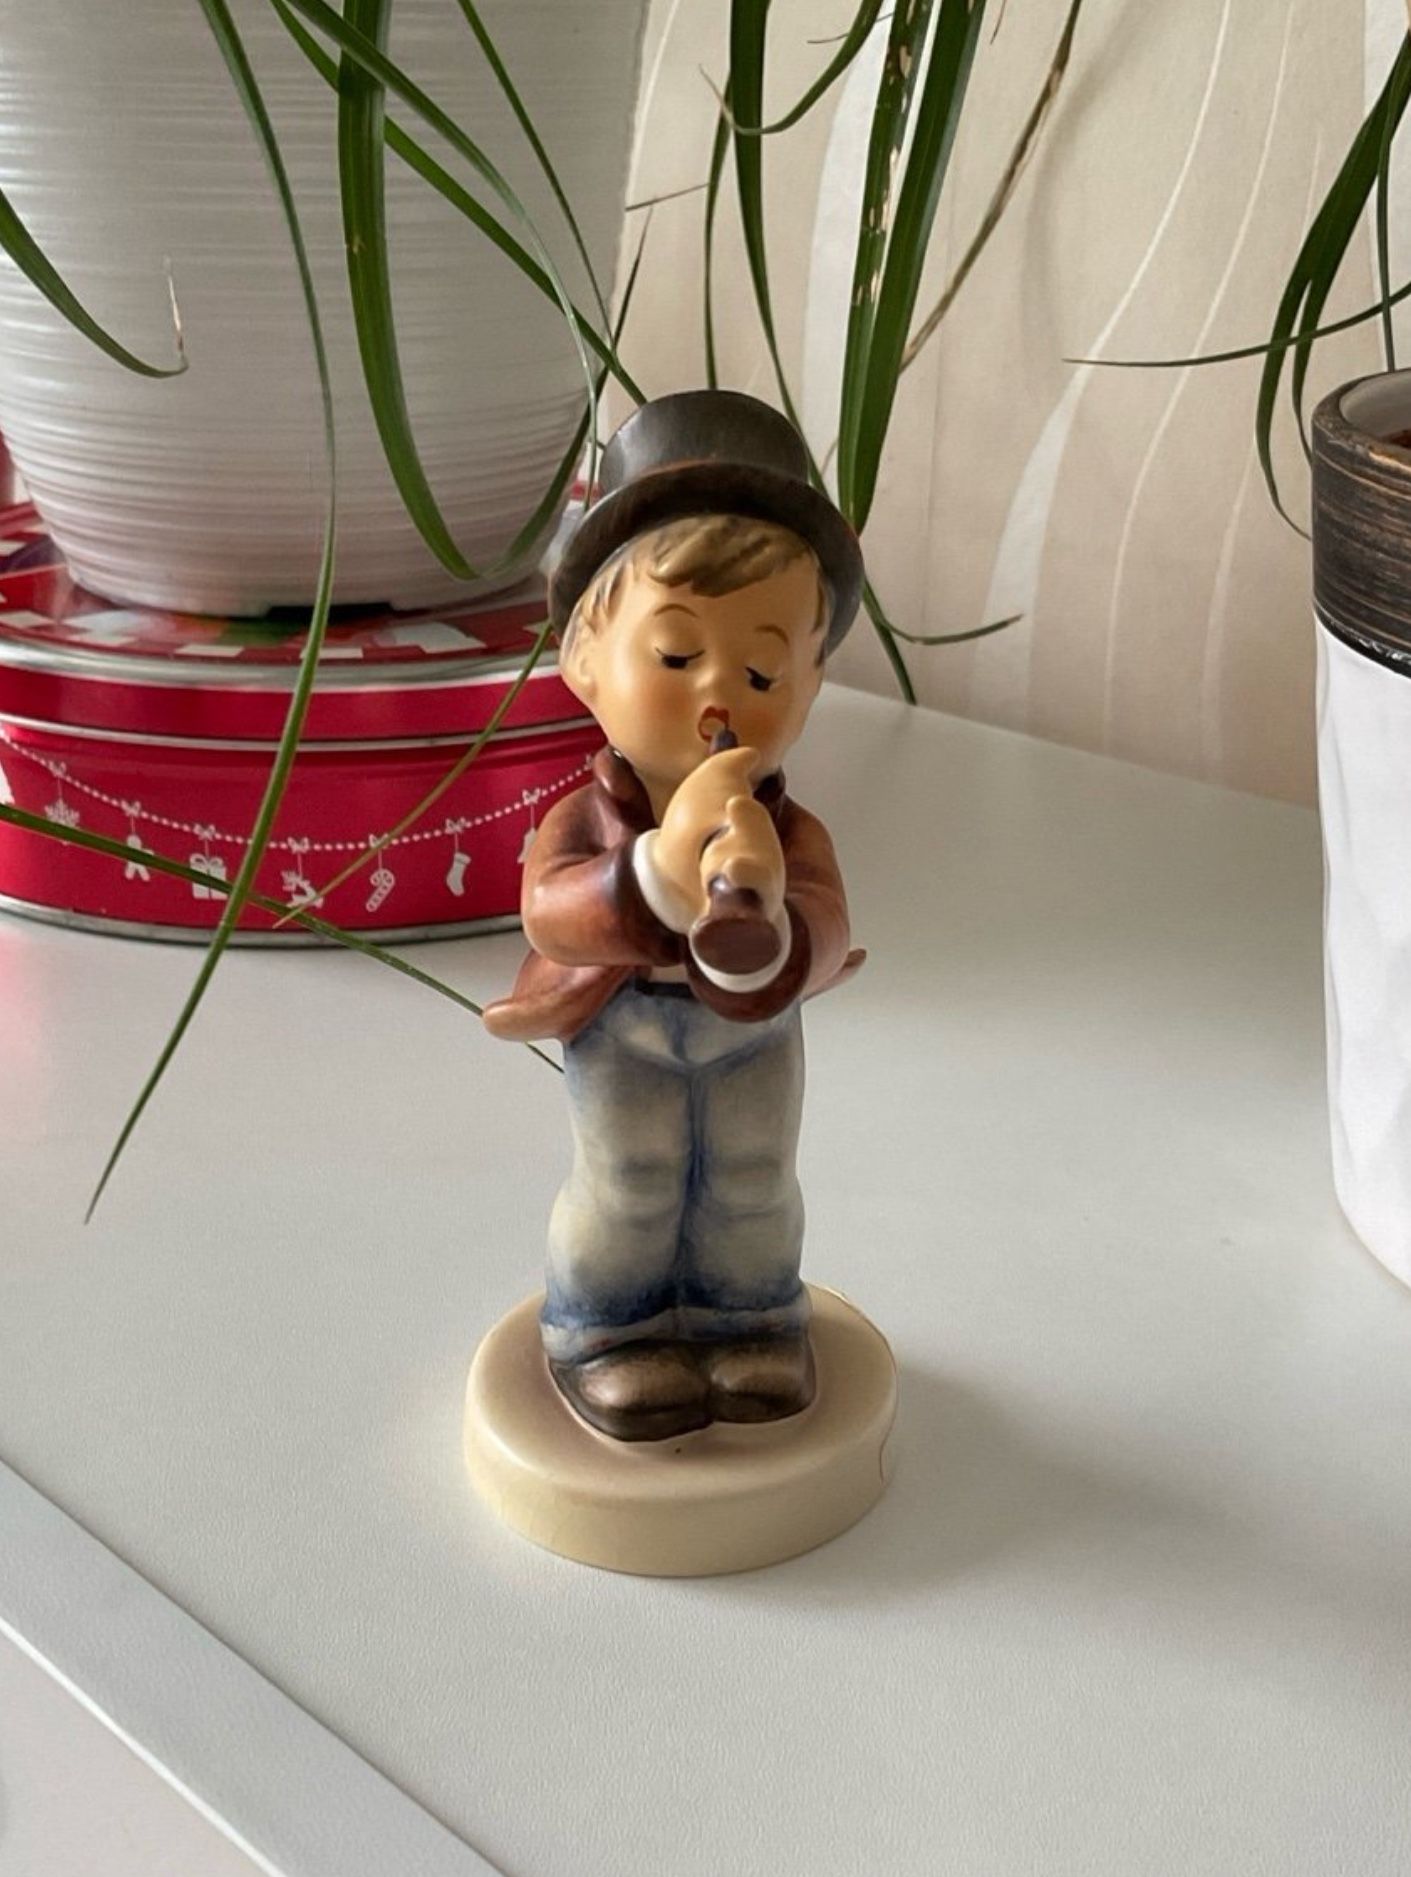 Vintage Goebel Hummel porcelain “serenade” figurine, West Germany  5” 